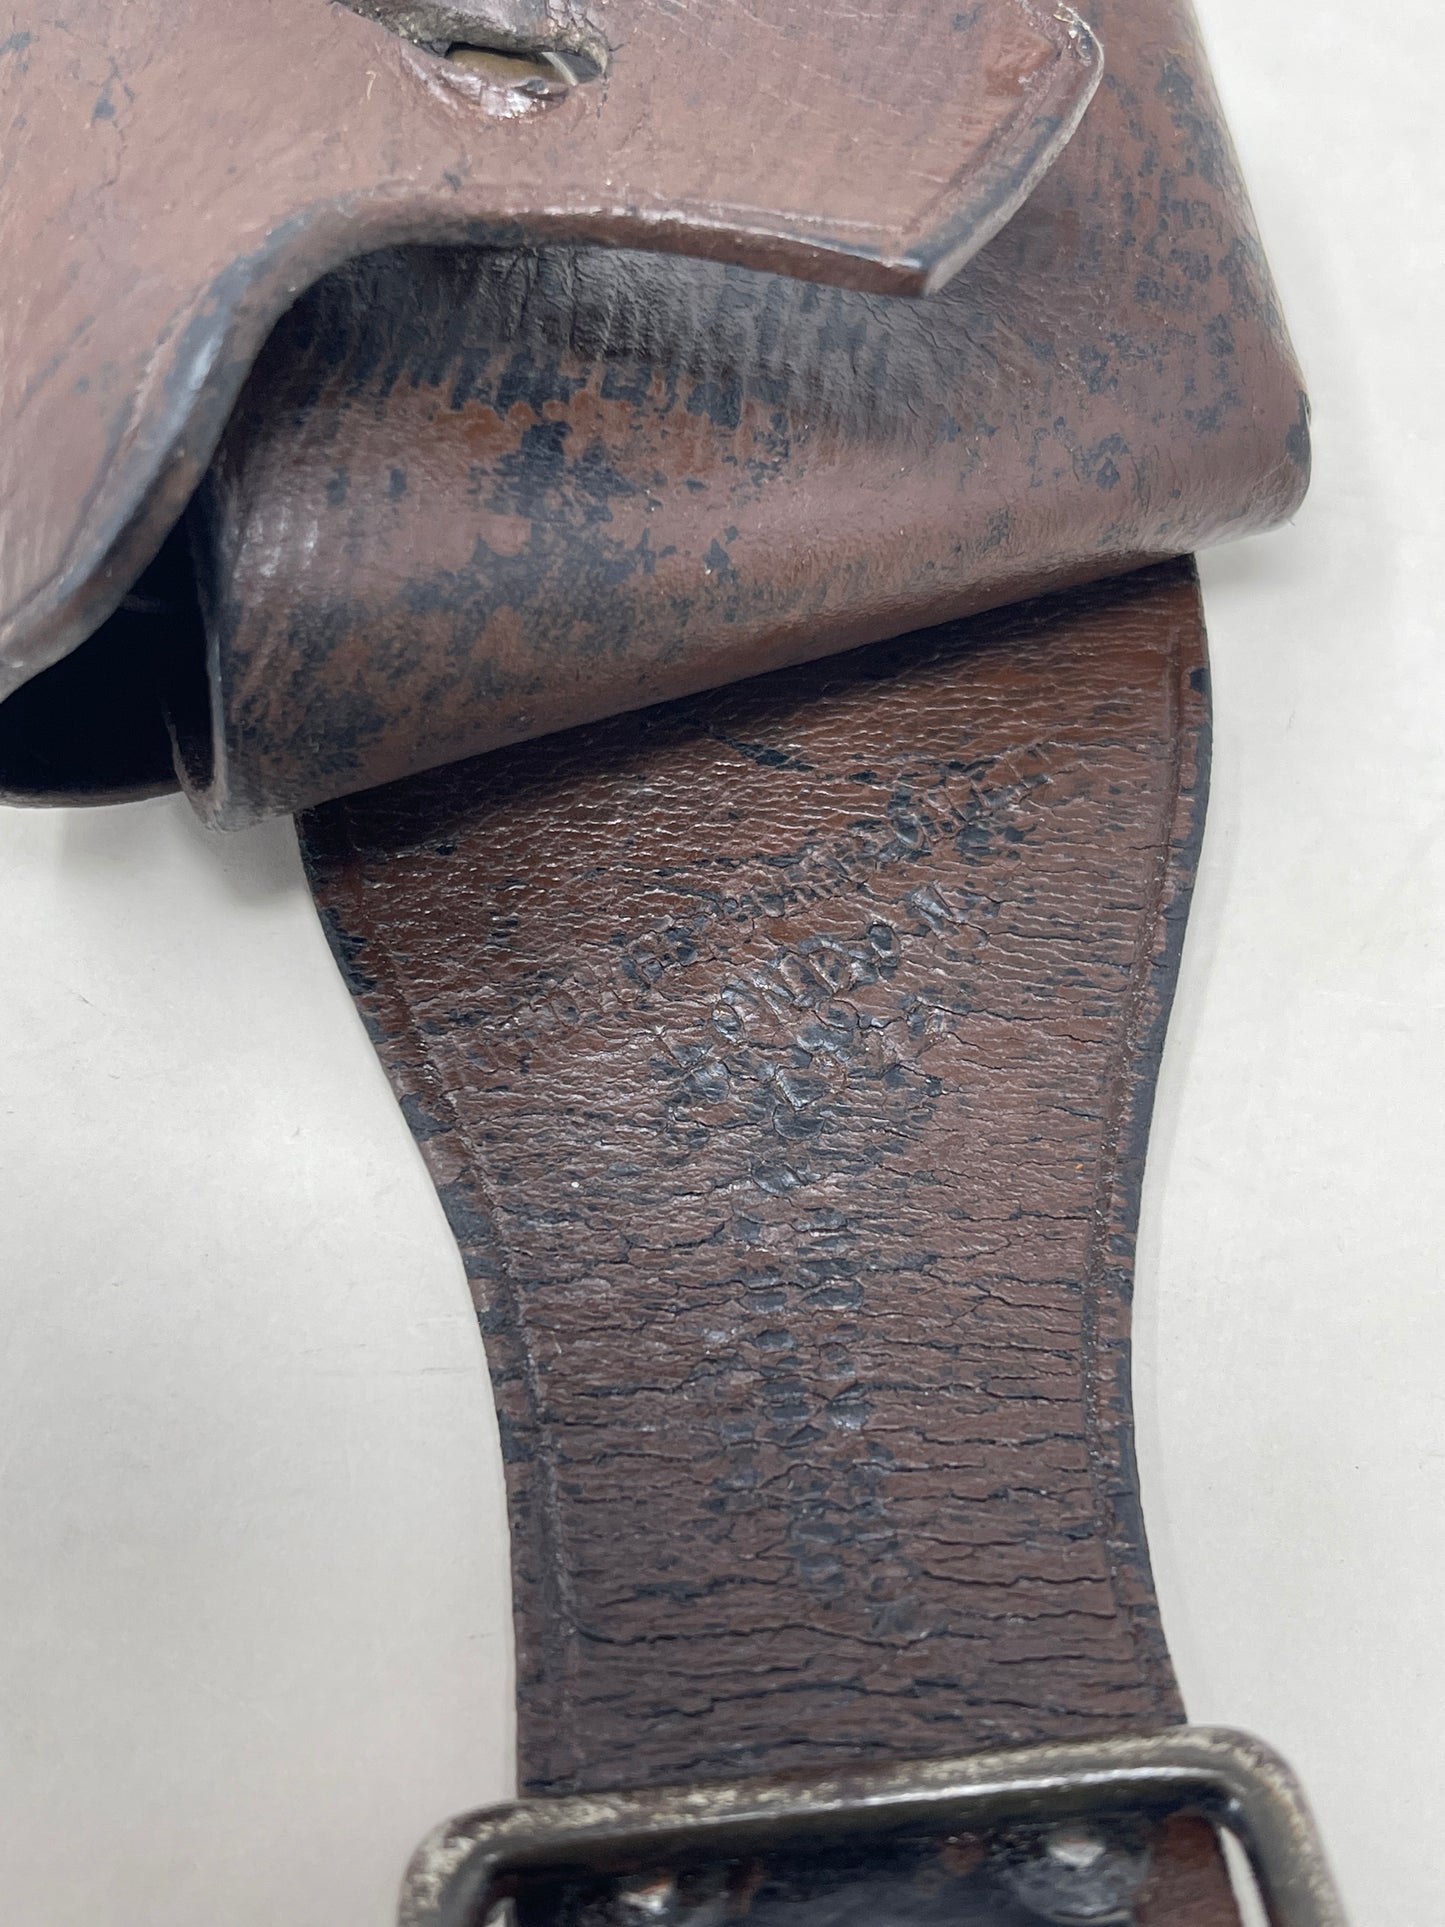 Bandolier, 1903 pattern: British